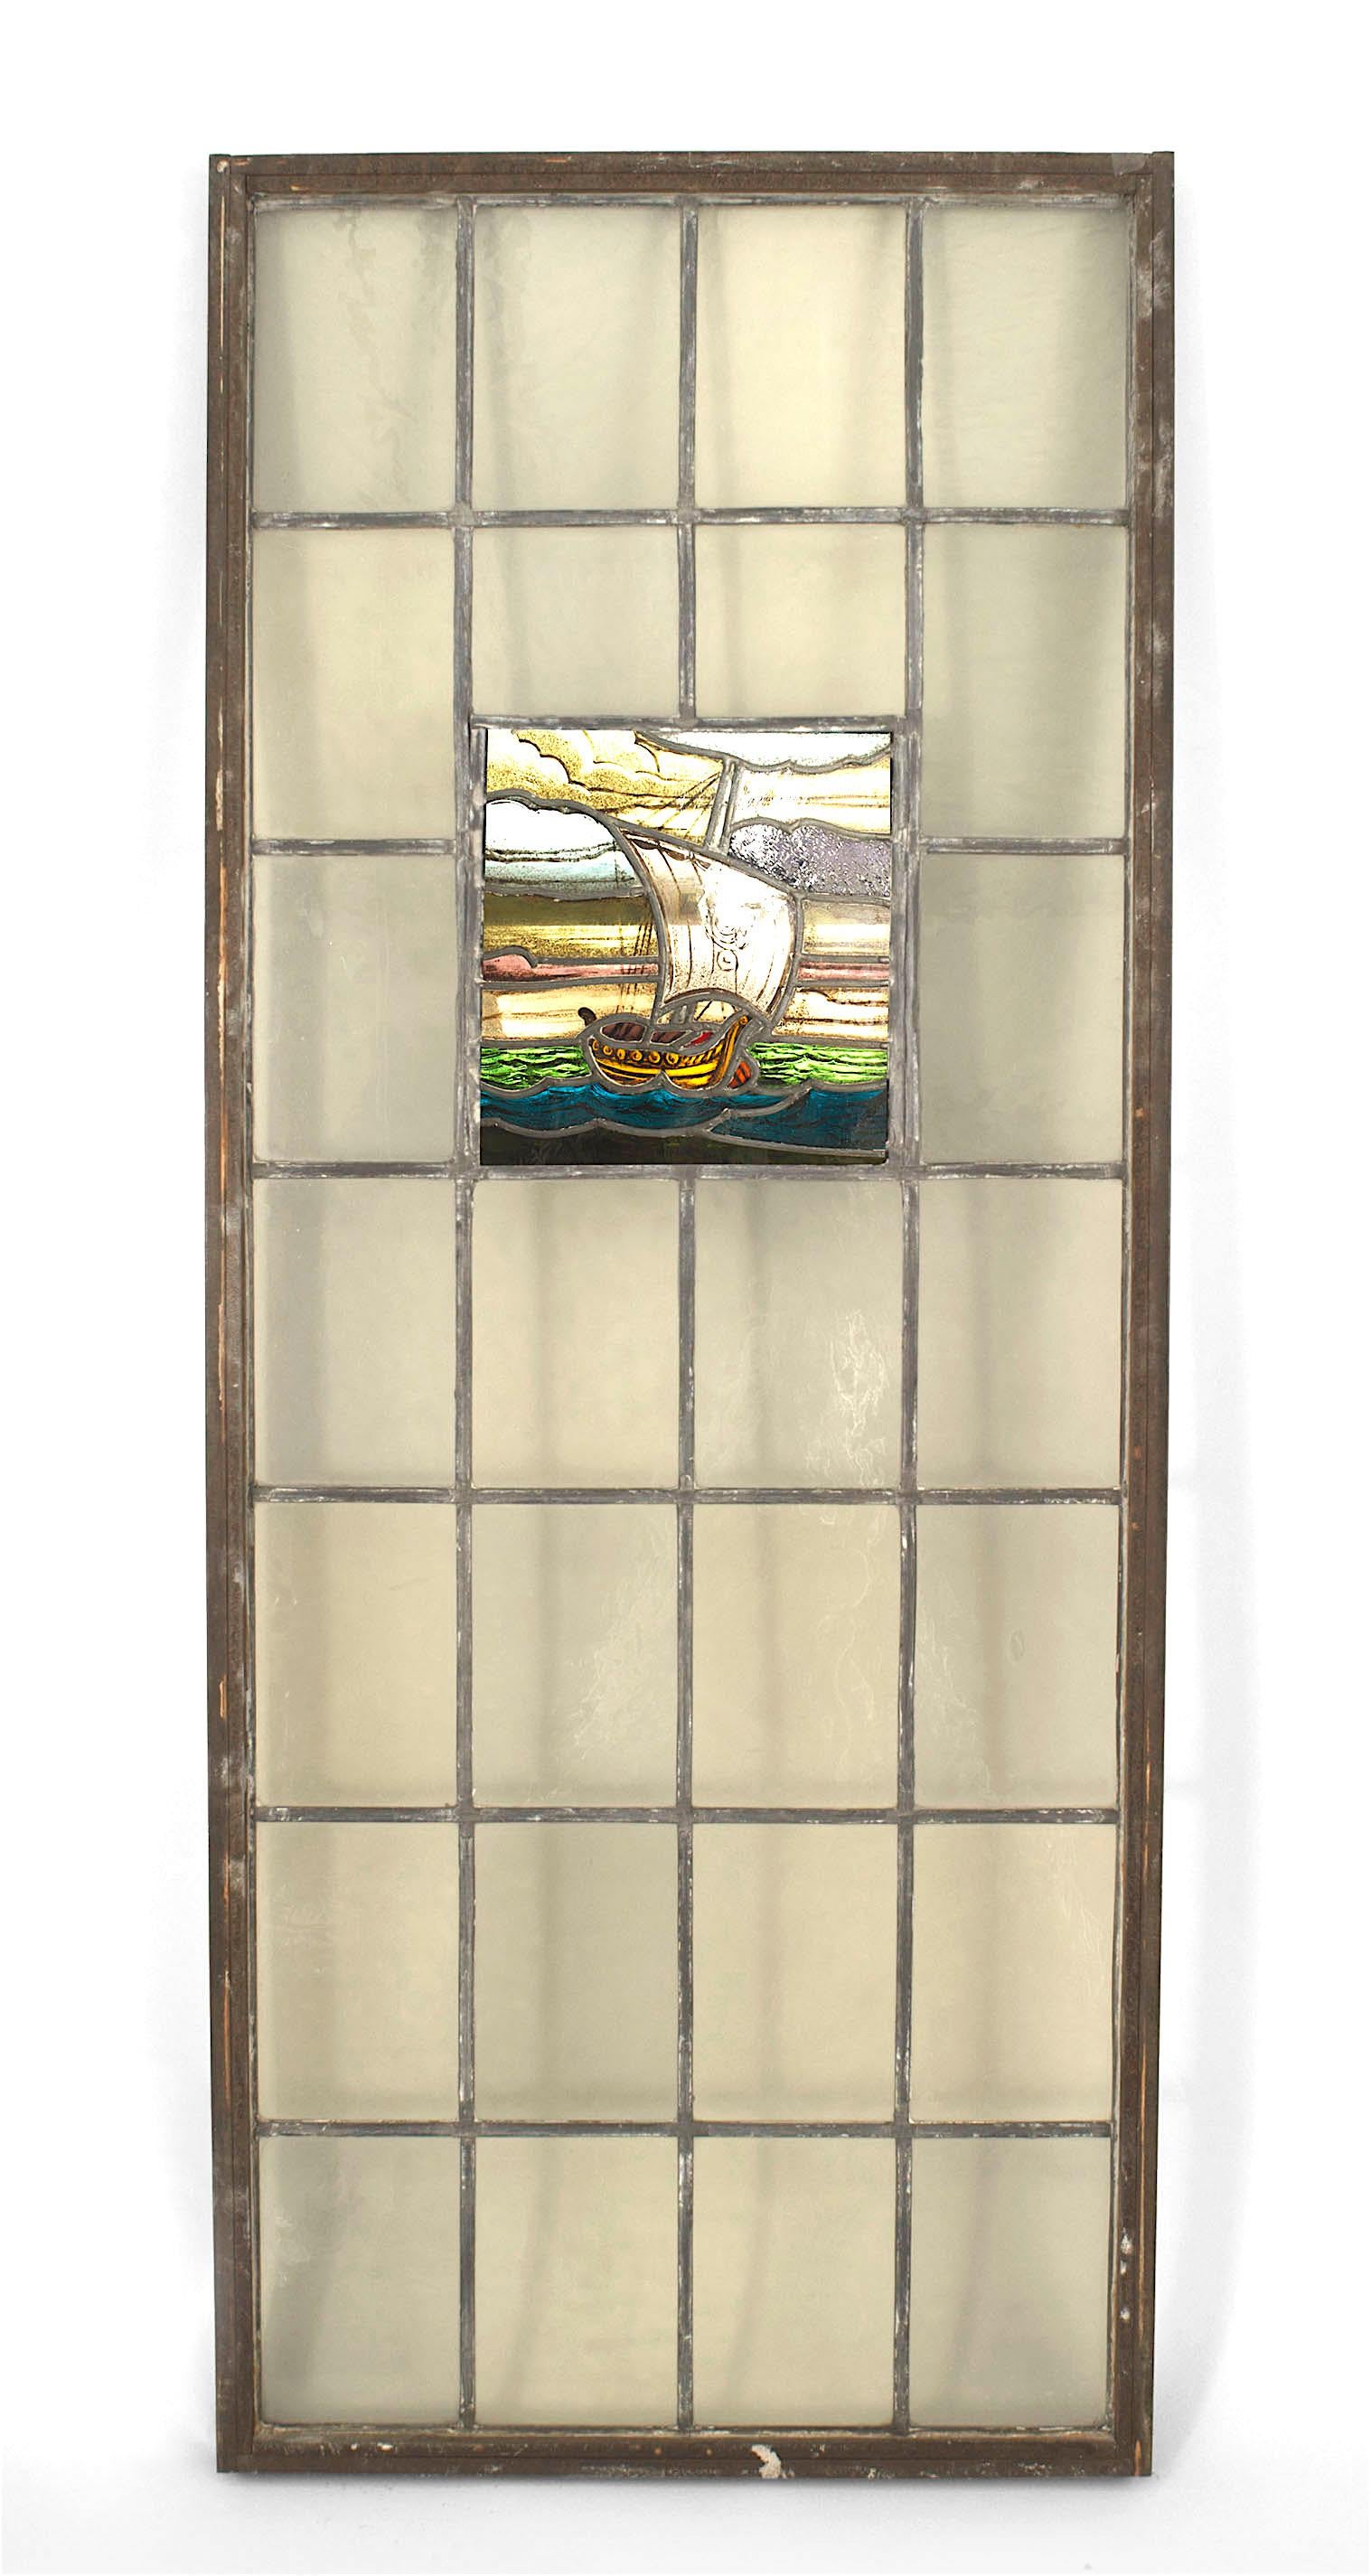 Englische Arts & Crafts Glasmalerei und Bleiglasfenster mit einem Wikinger-Segelboot in einem Gitter aus klaren Scheiben.
